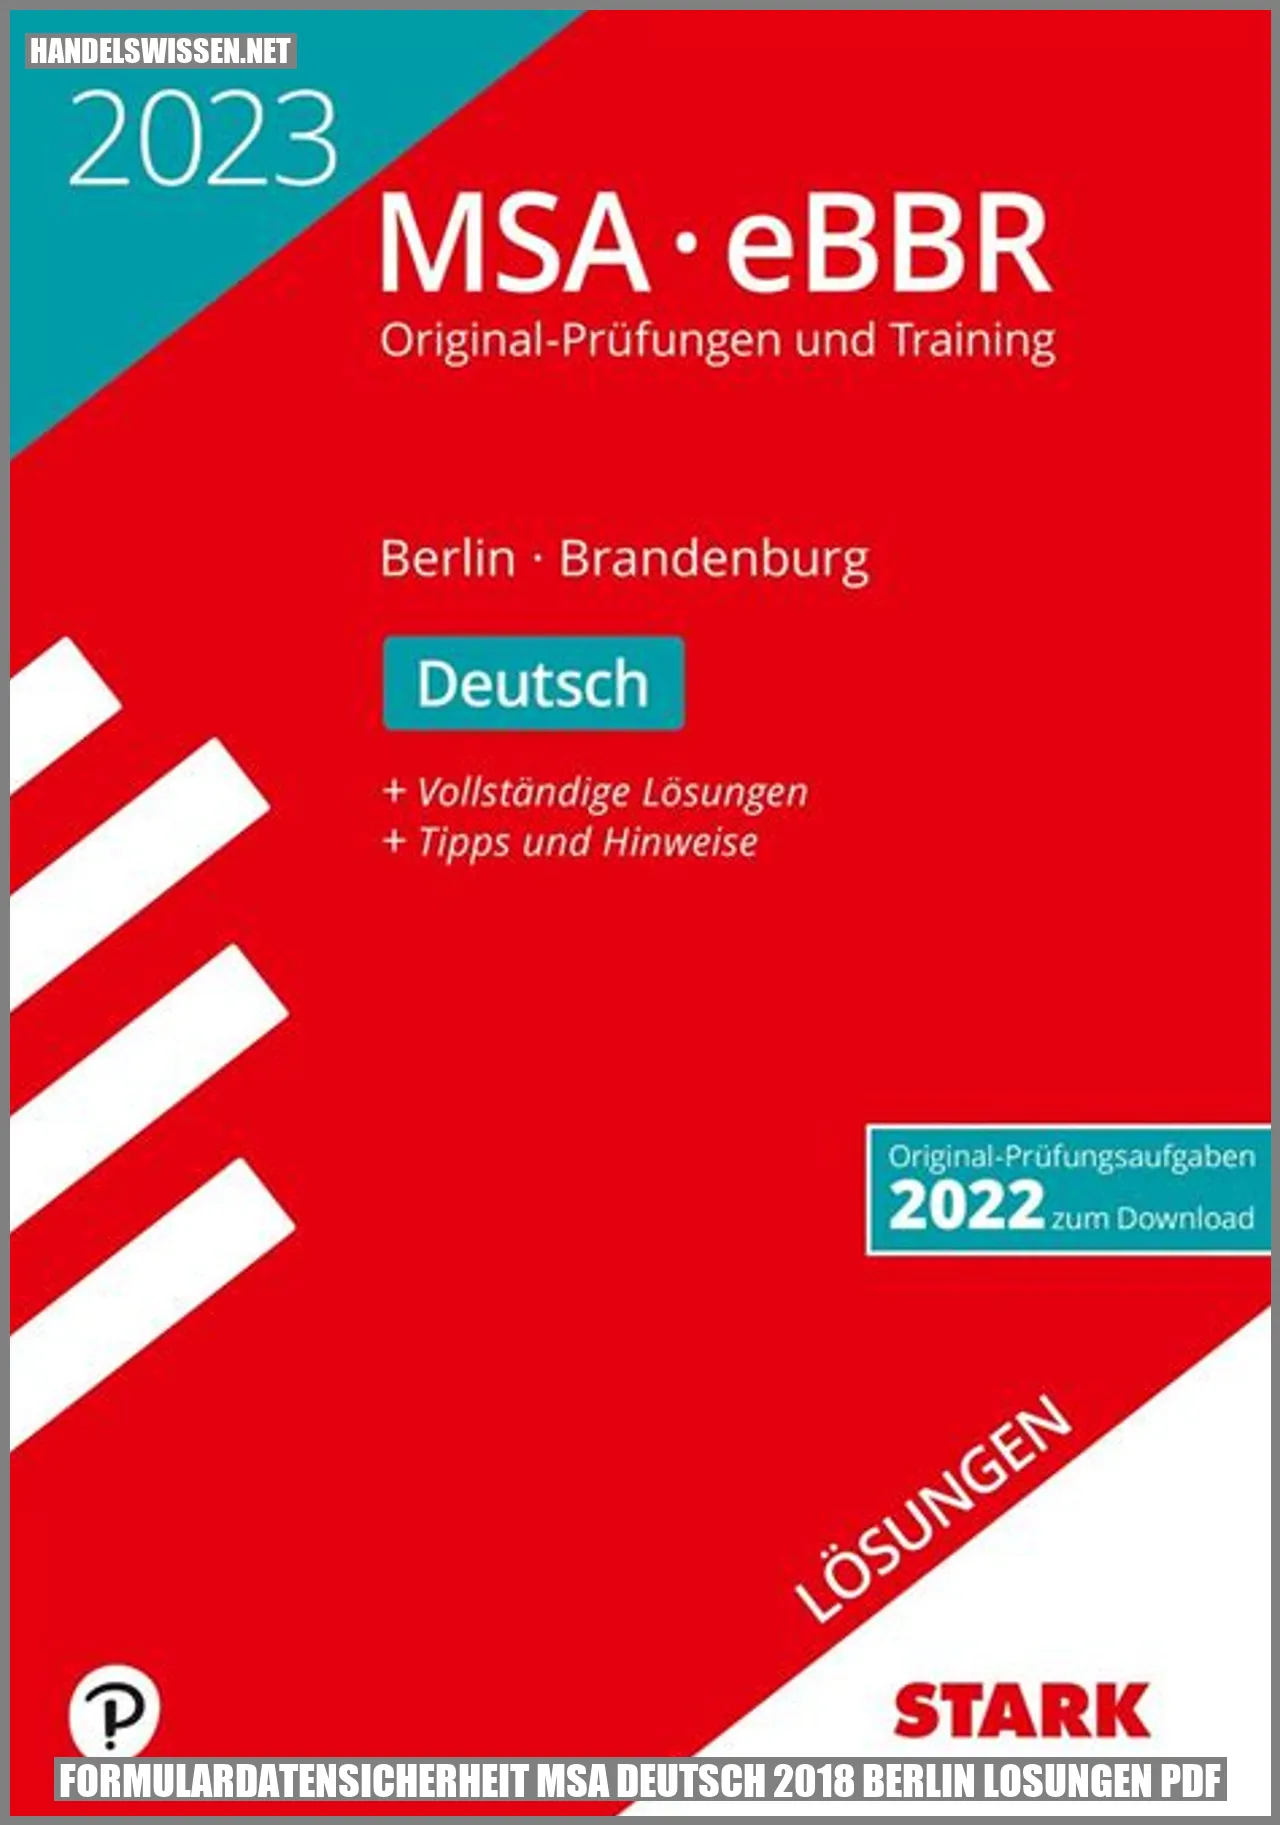 Formulardatensicherheit MSA Deutsch 2018 Berlin Lösungen PDF